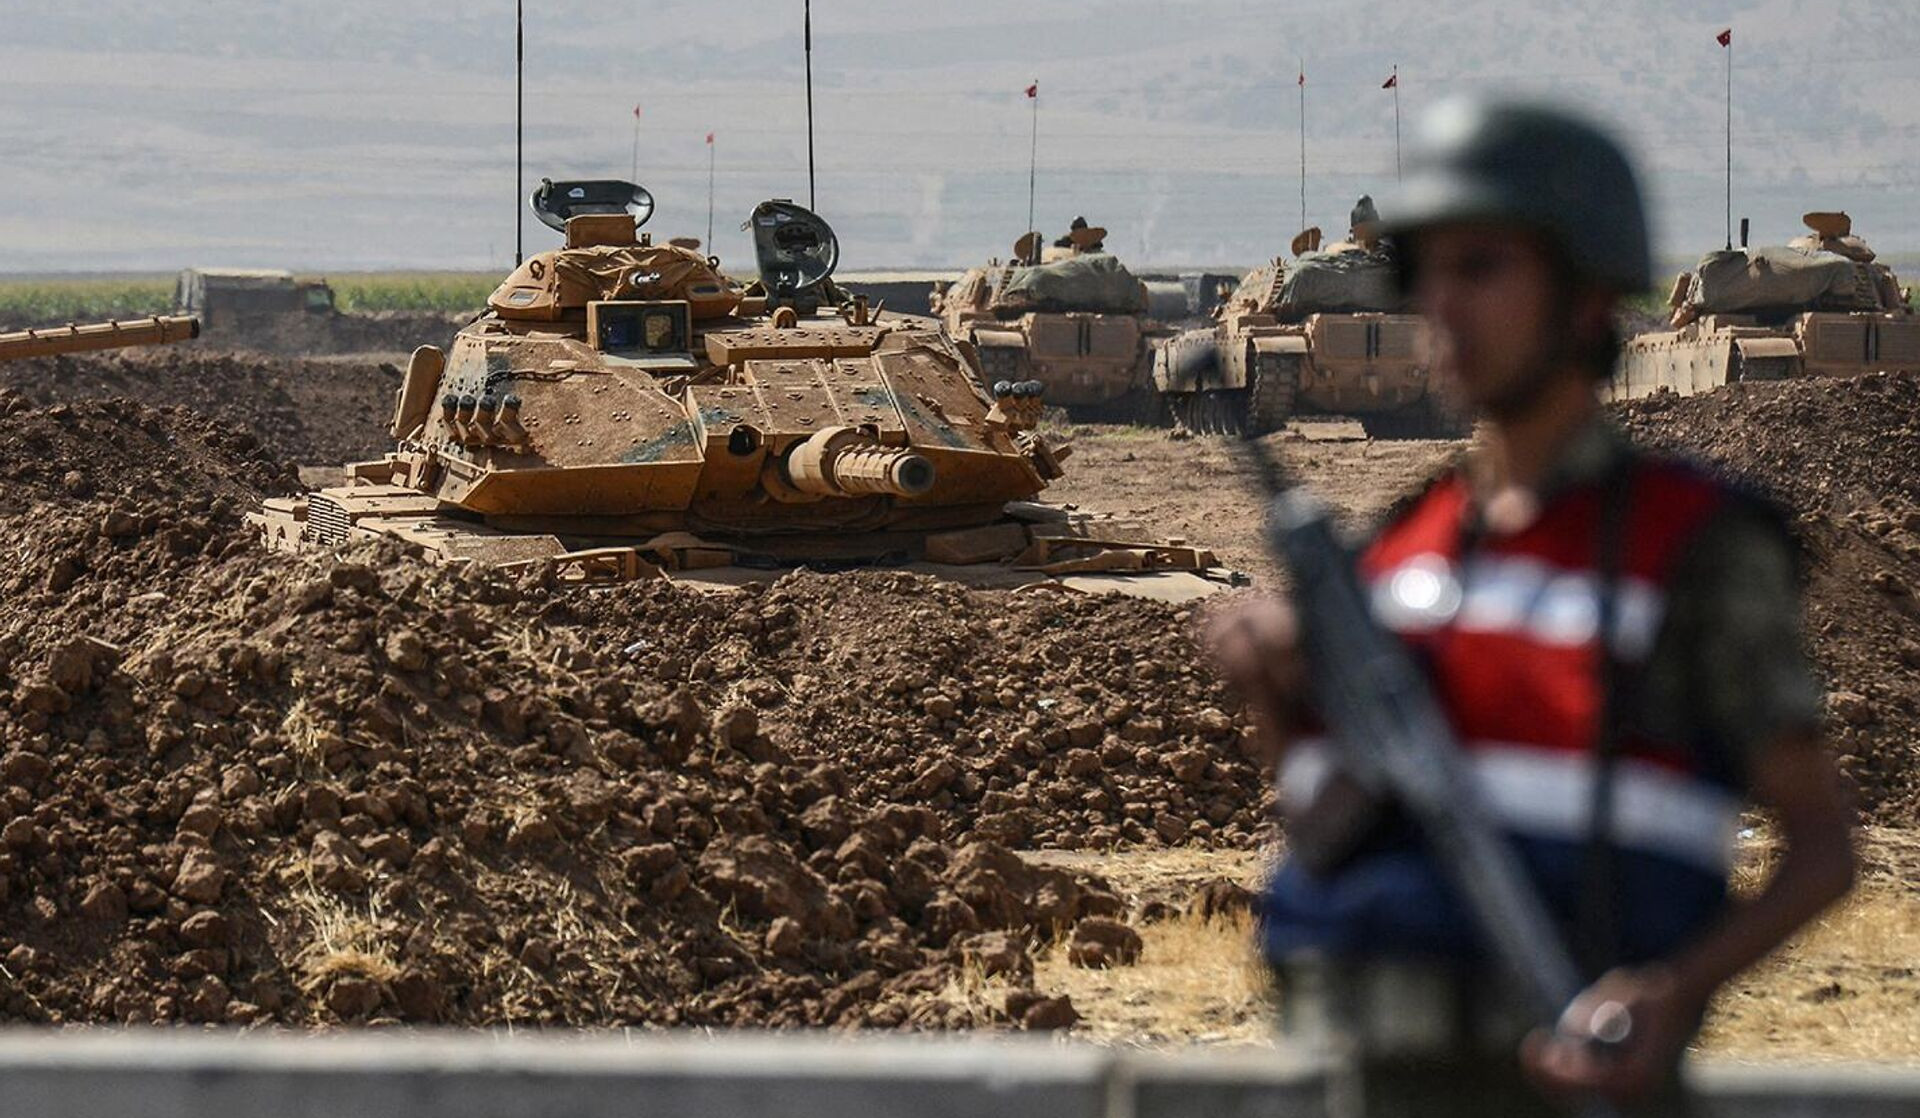 Իրաքի հյուսիսում թուրքական ռազմակայանի վրա հարձակման հետևանքով ինը թուրք զինծառայող է զոհվել